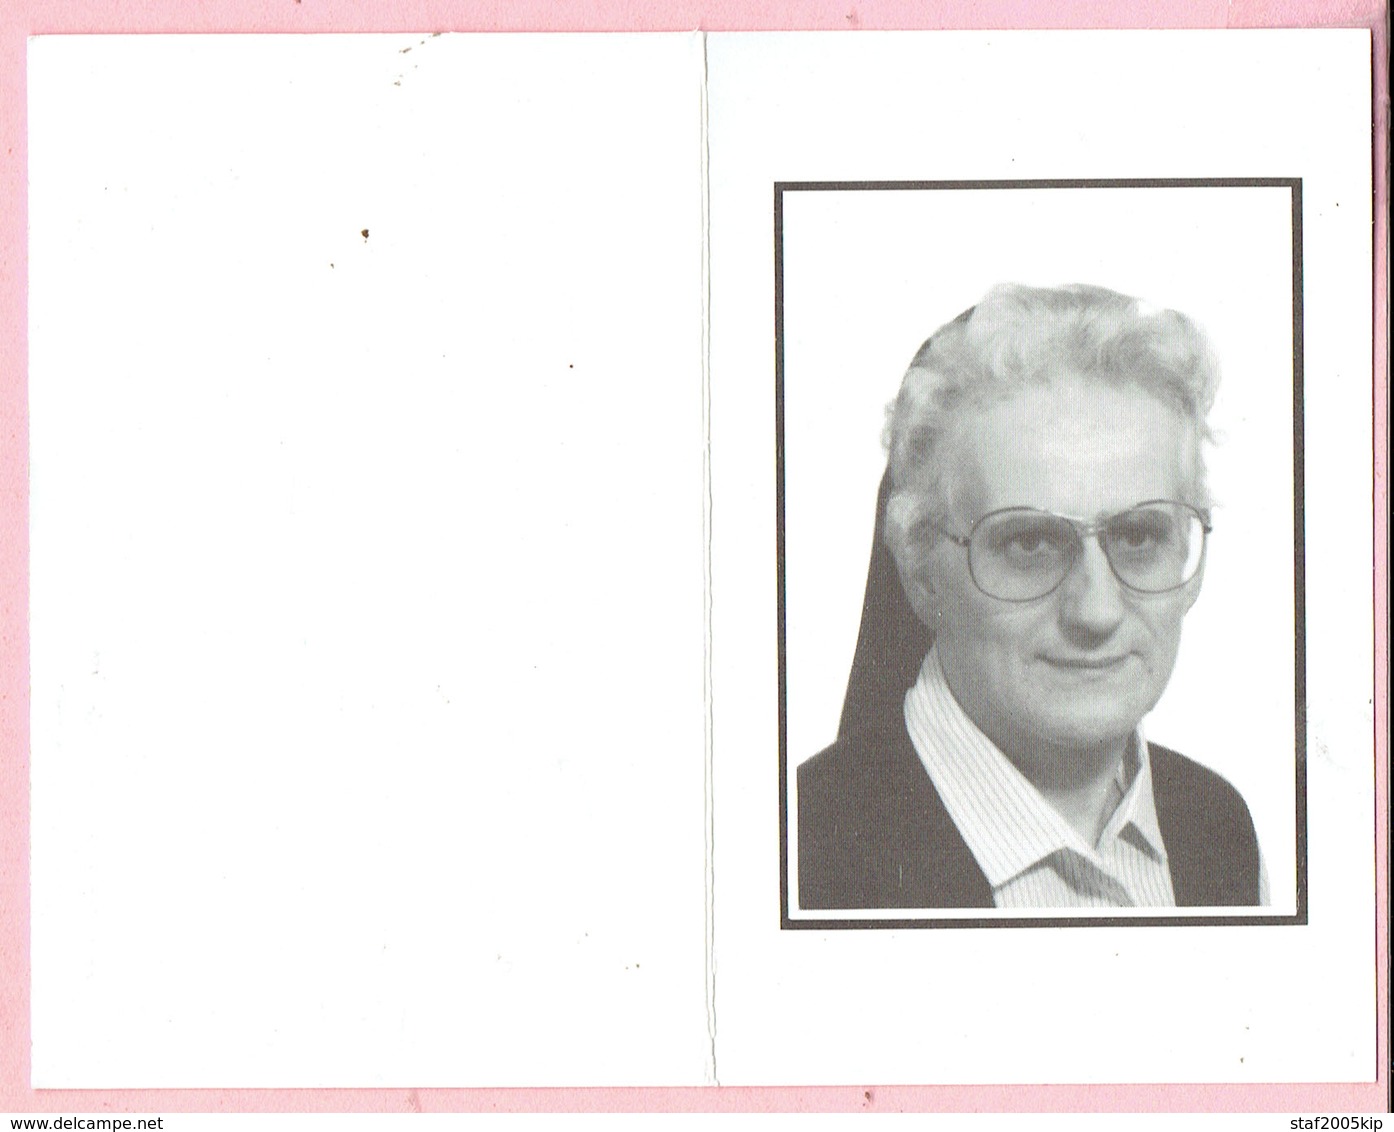 Bidprentje - Zuster IDA BRUYNINCKX Directrice Home De Merode Kasterlee -  Rillaar 1936 - 1988 - Images Religieuses